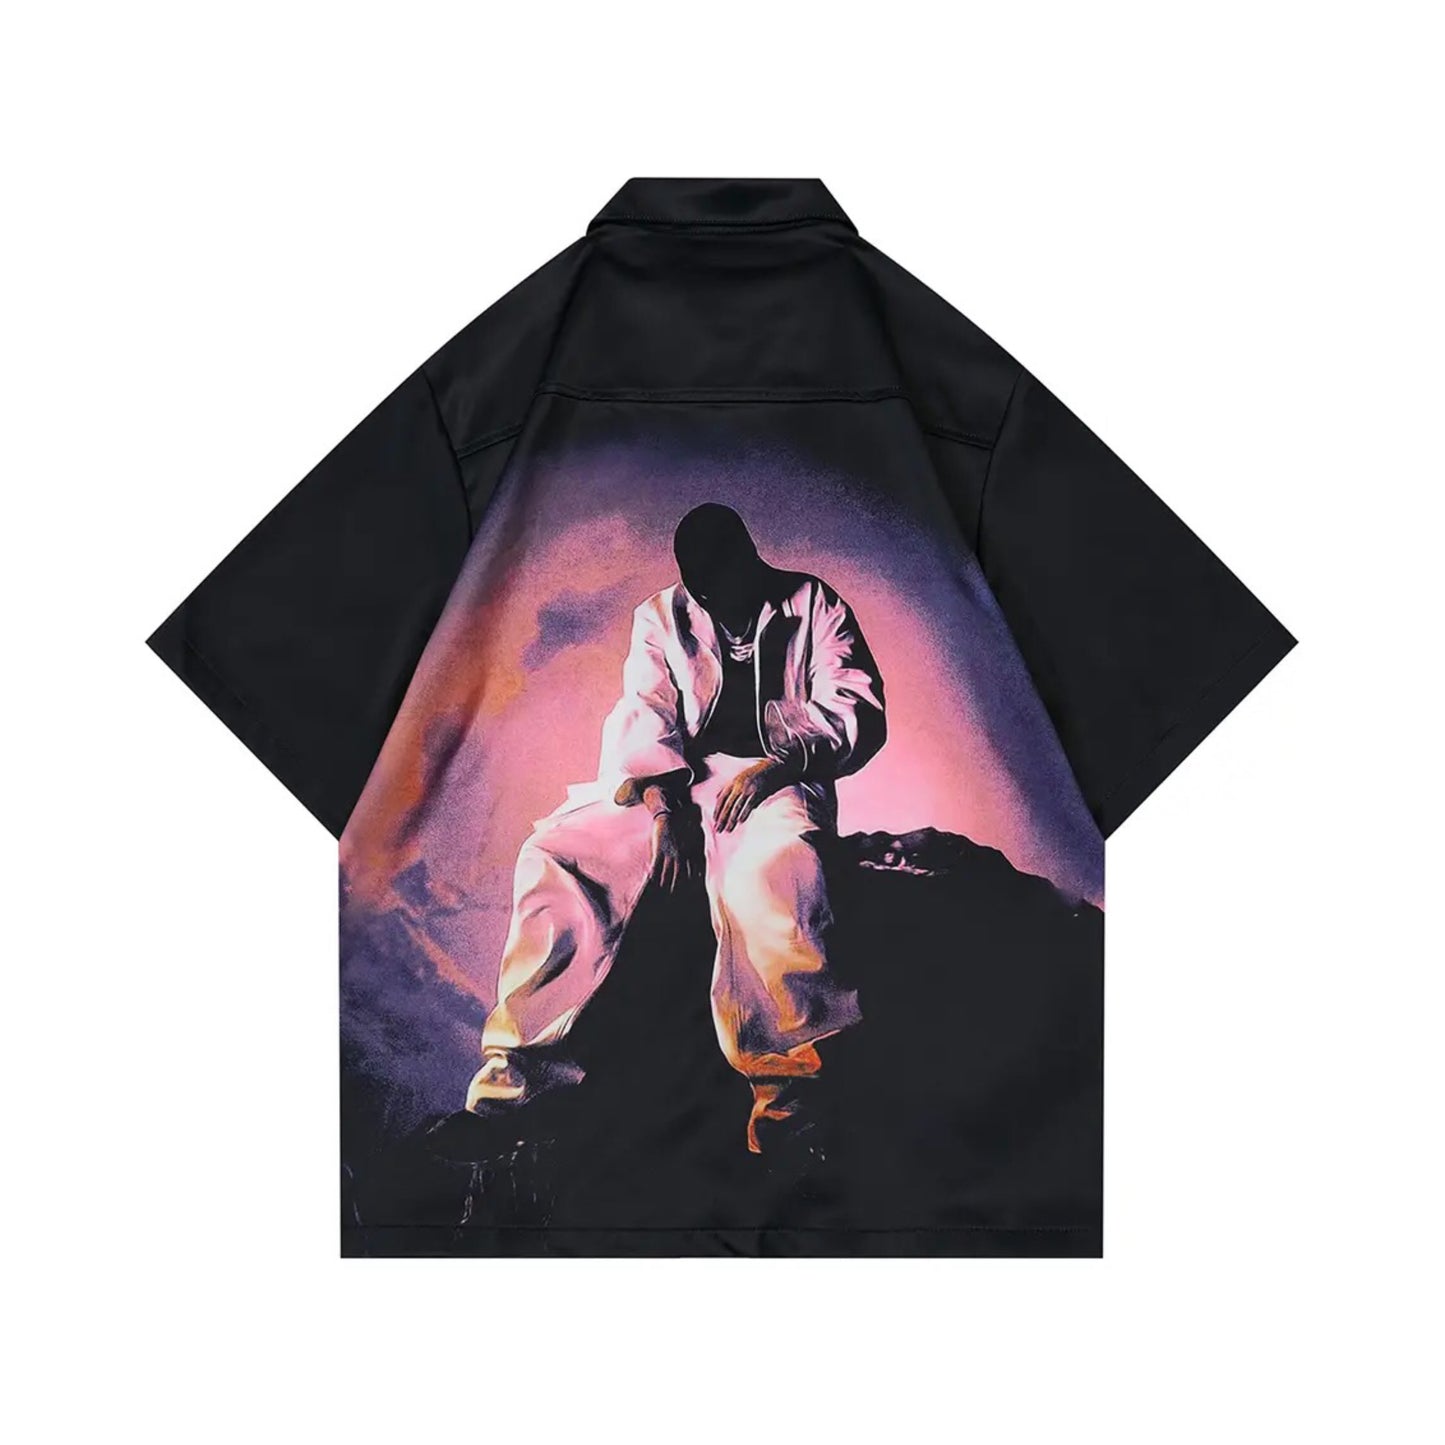 Blackair X Zip Up Shirt | Unisex Shirts Collection | H0NEYBEAR